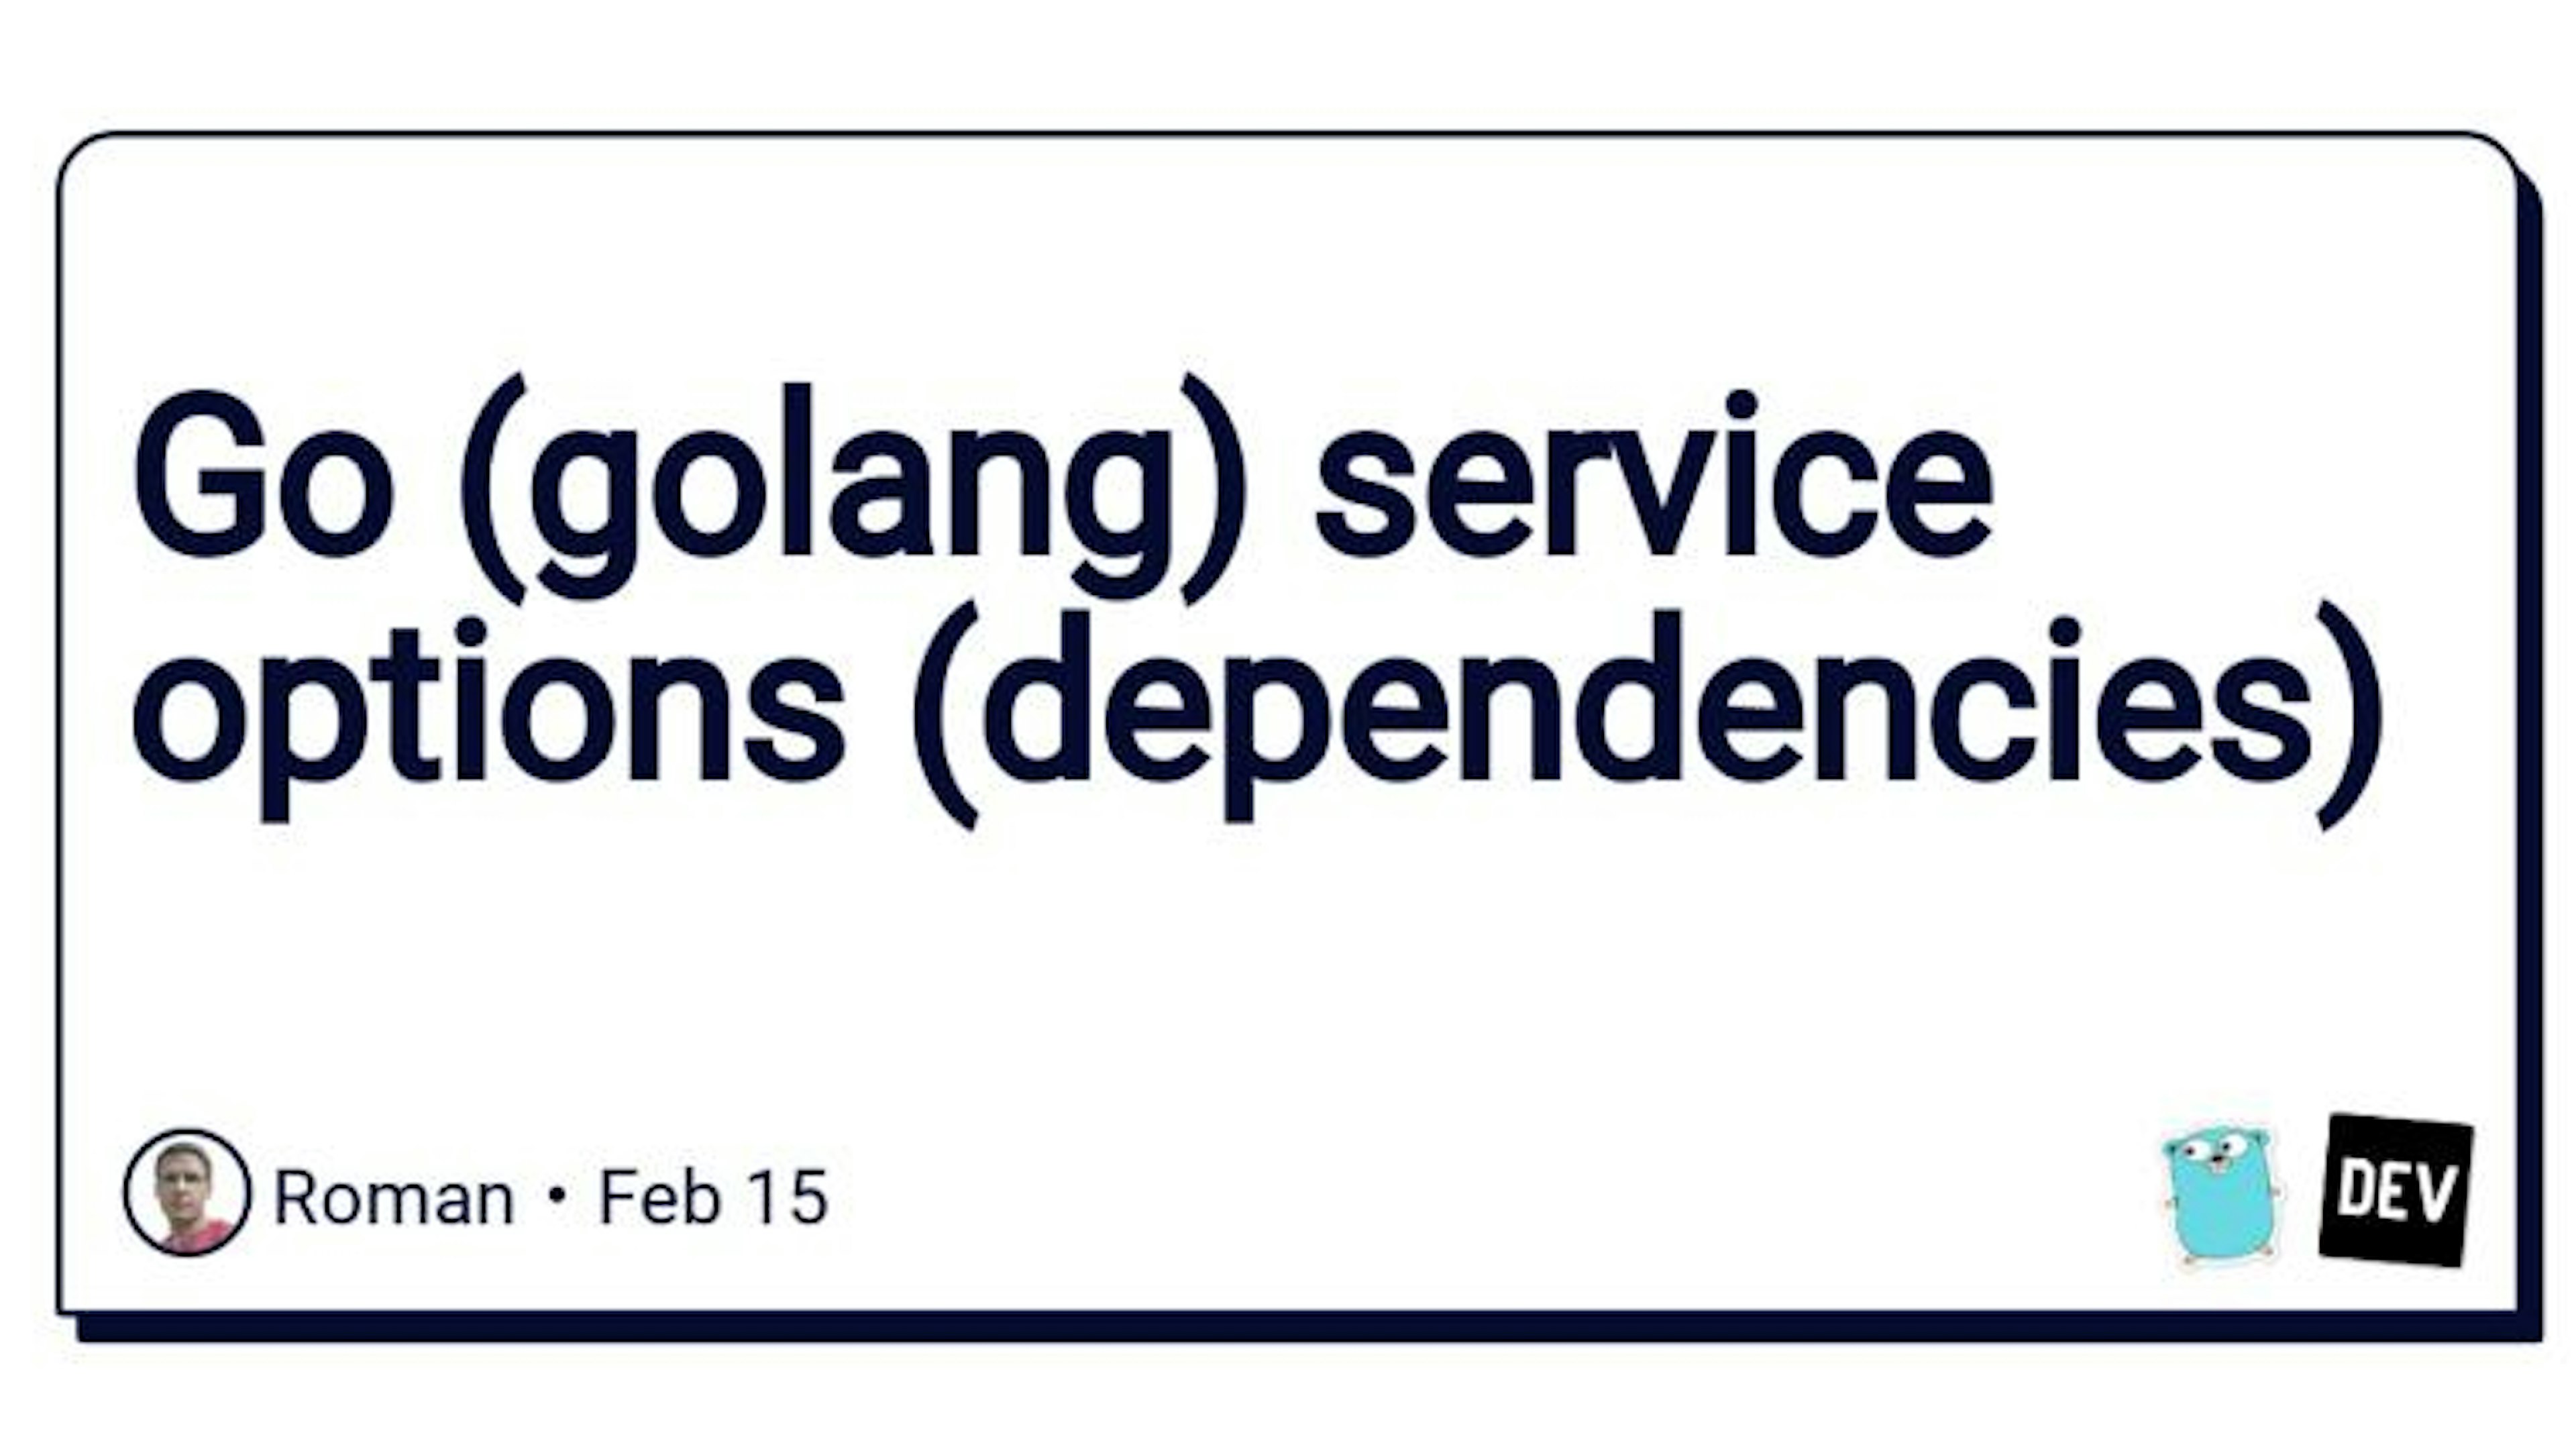 Go (golang) service options (dependencies)